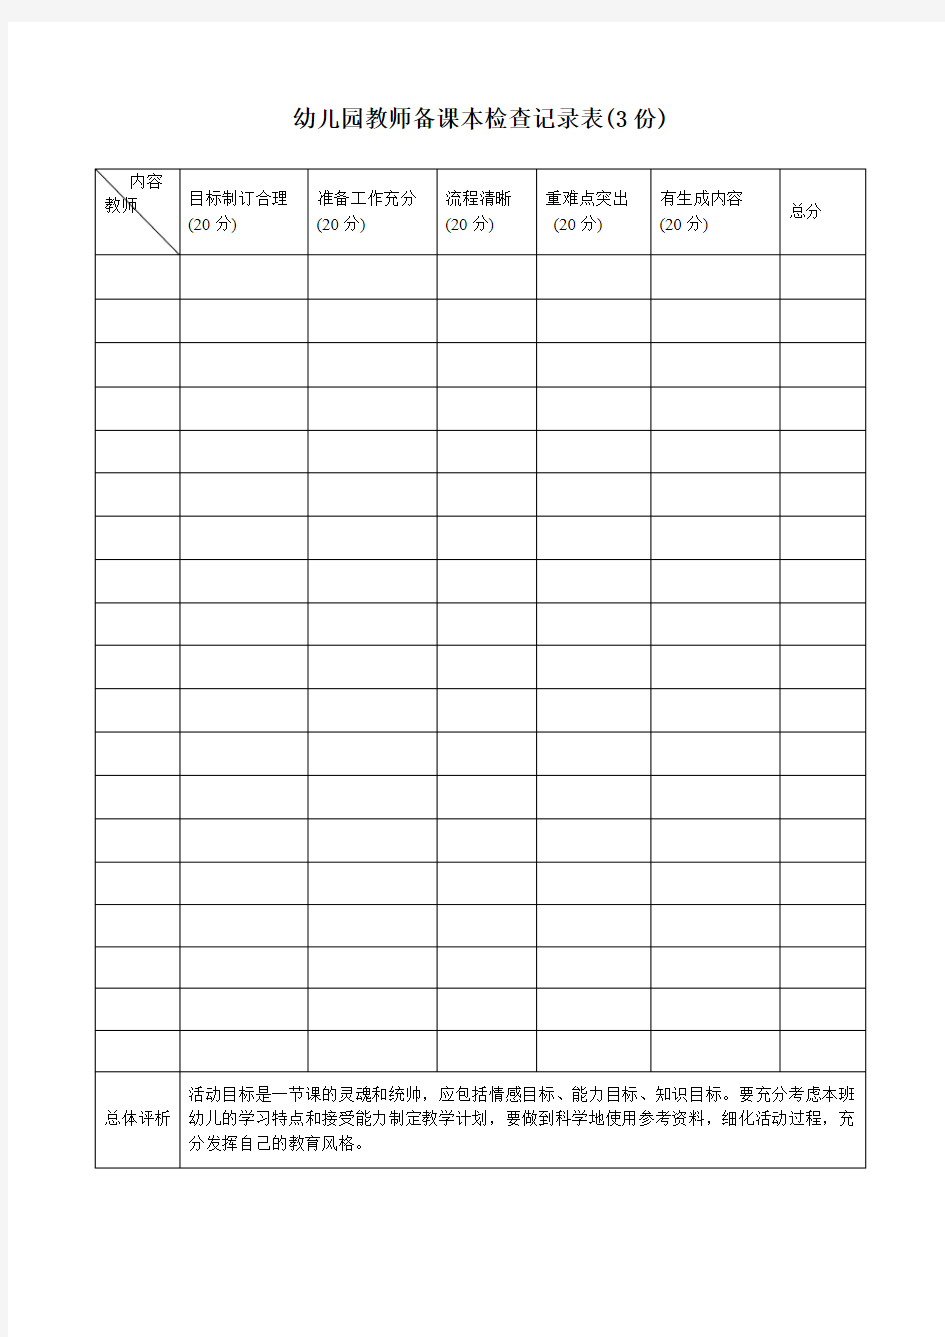 幼儿园教师备课本检查记录表(3份) 